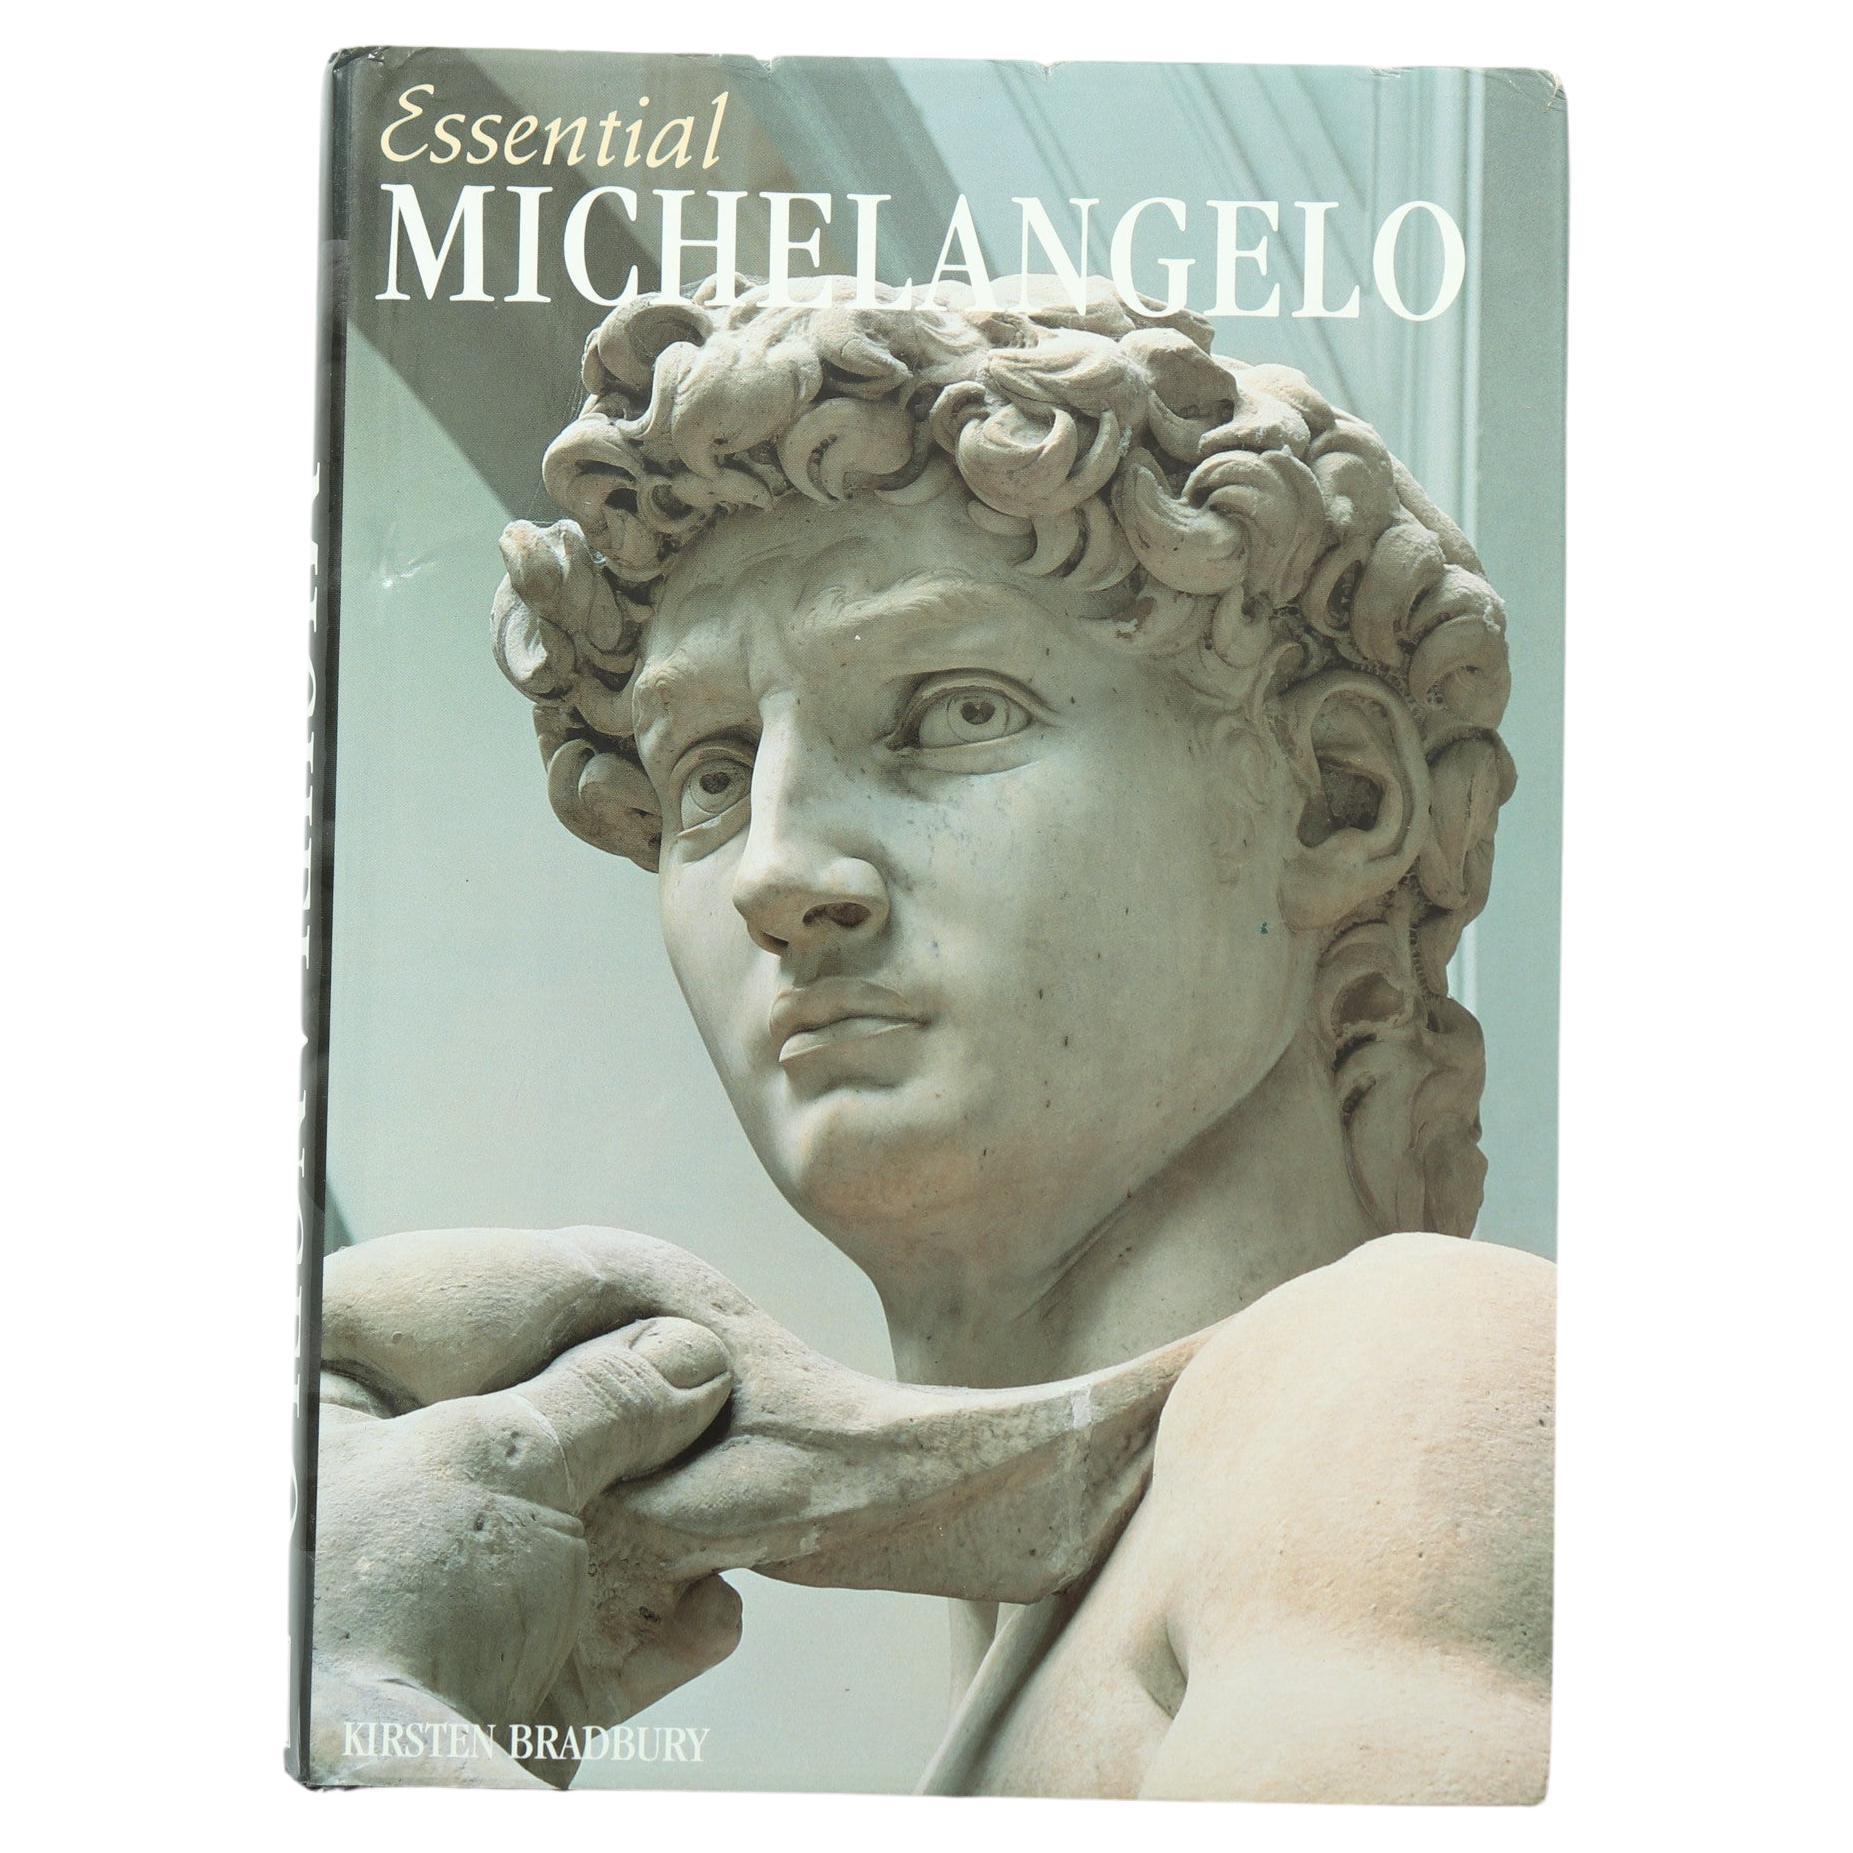 Essential Michelangelo by Kirsten Bradbury For Sale